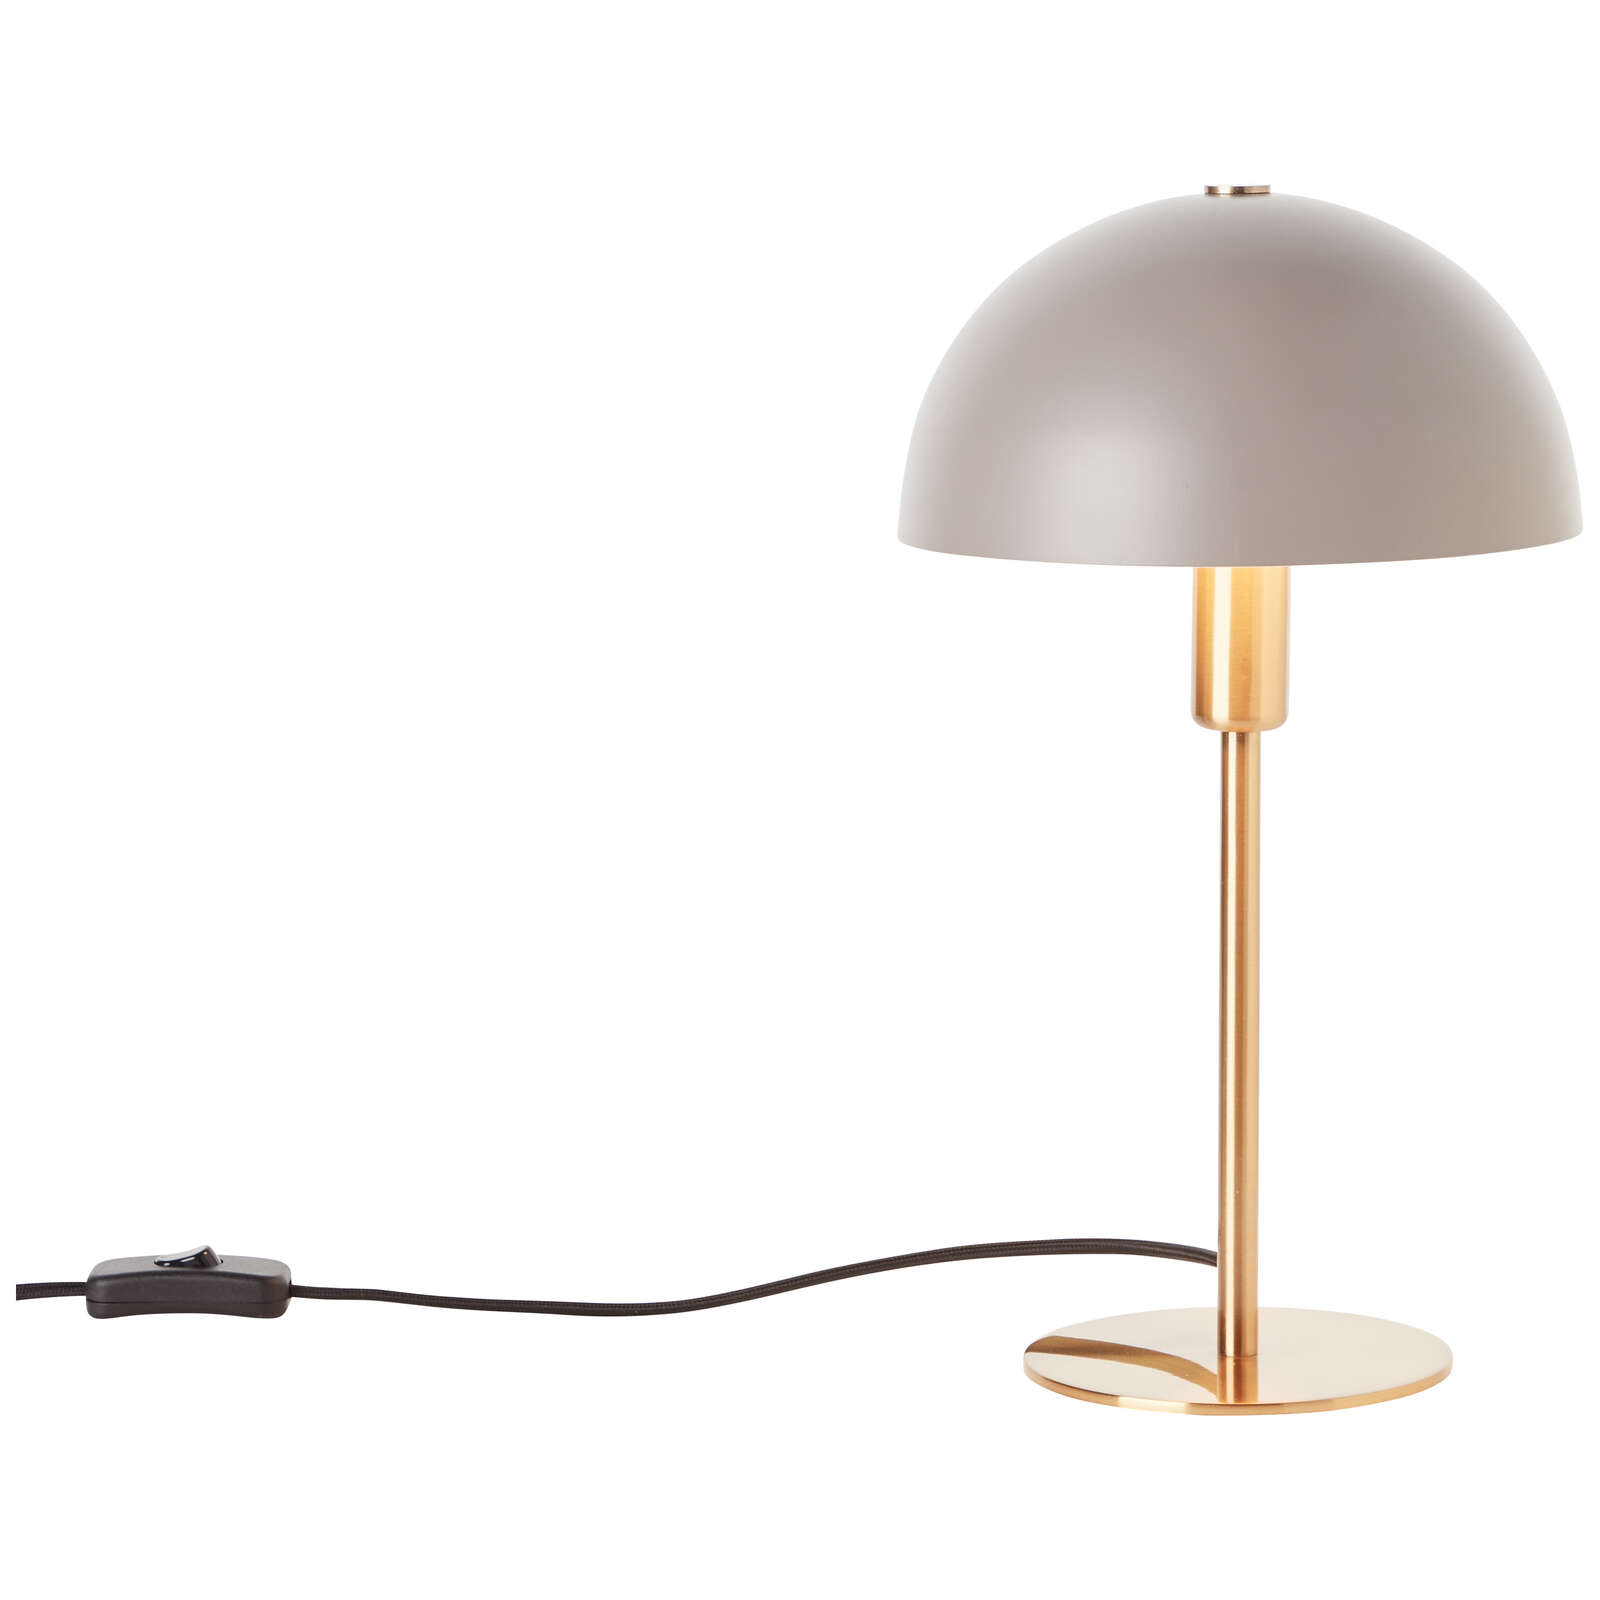             Metalen tafellamp - Lasse 1 - Goud
        